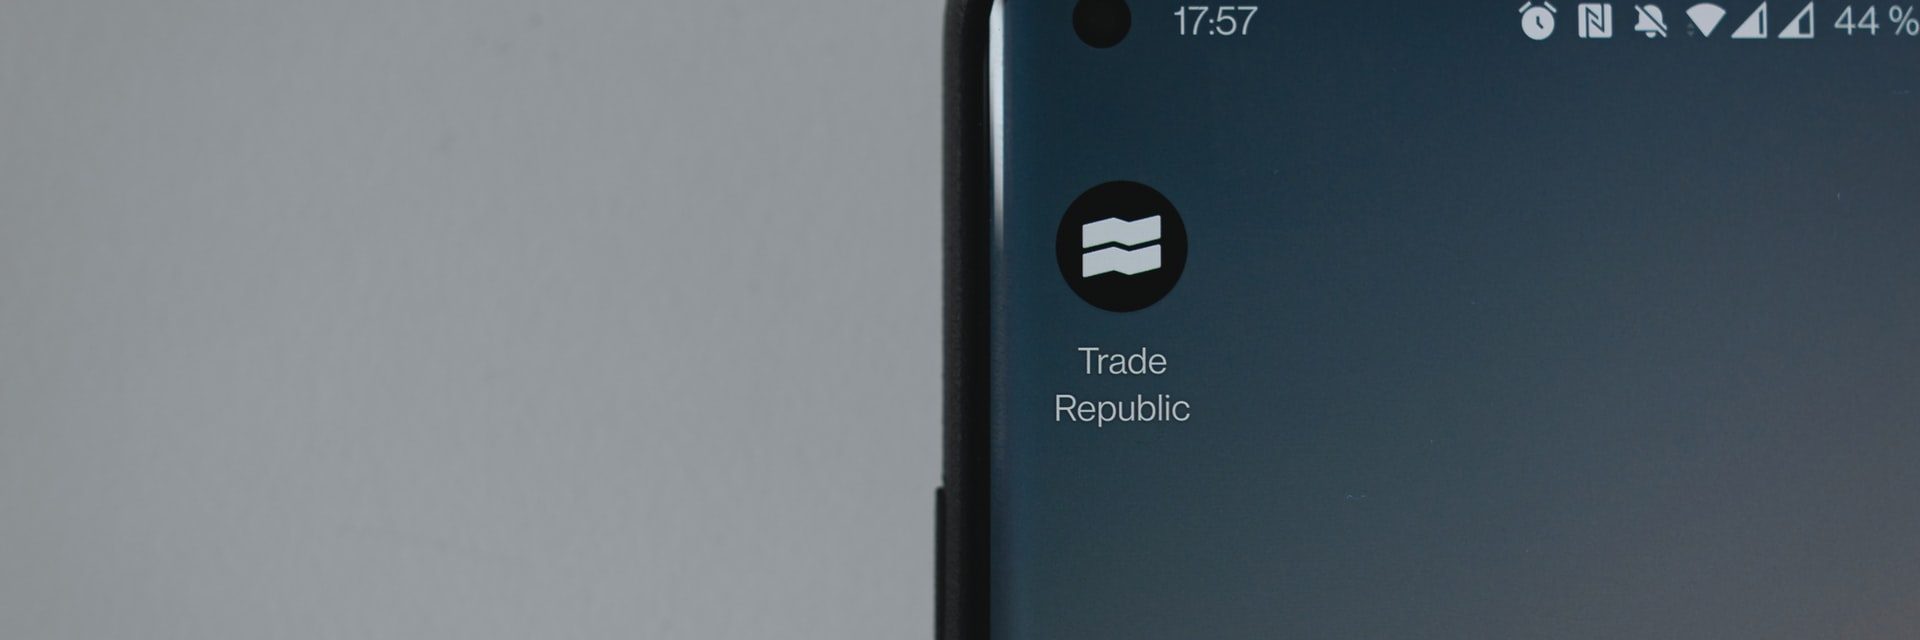 Trade Republic unspl